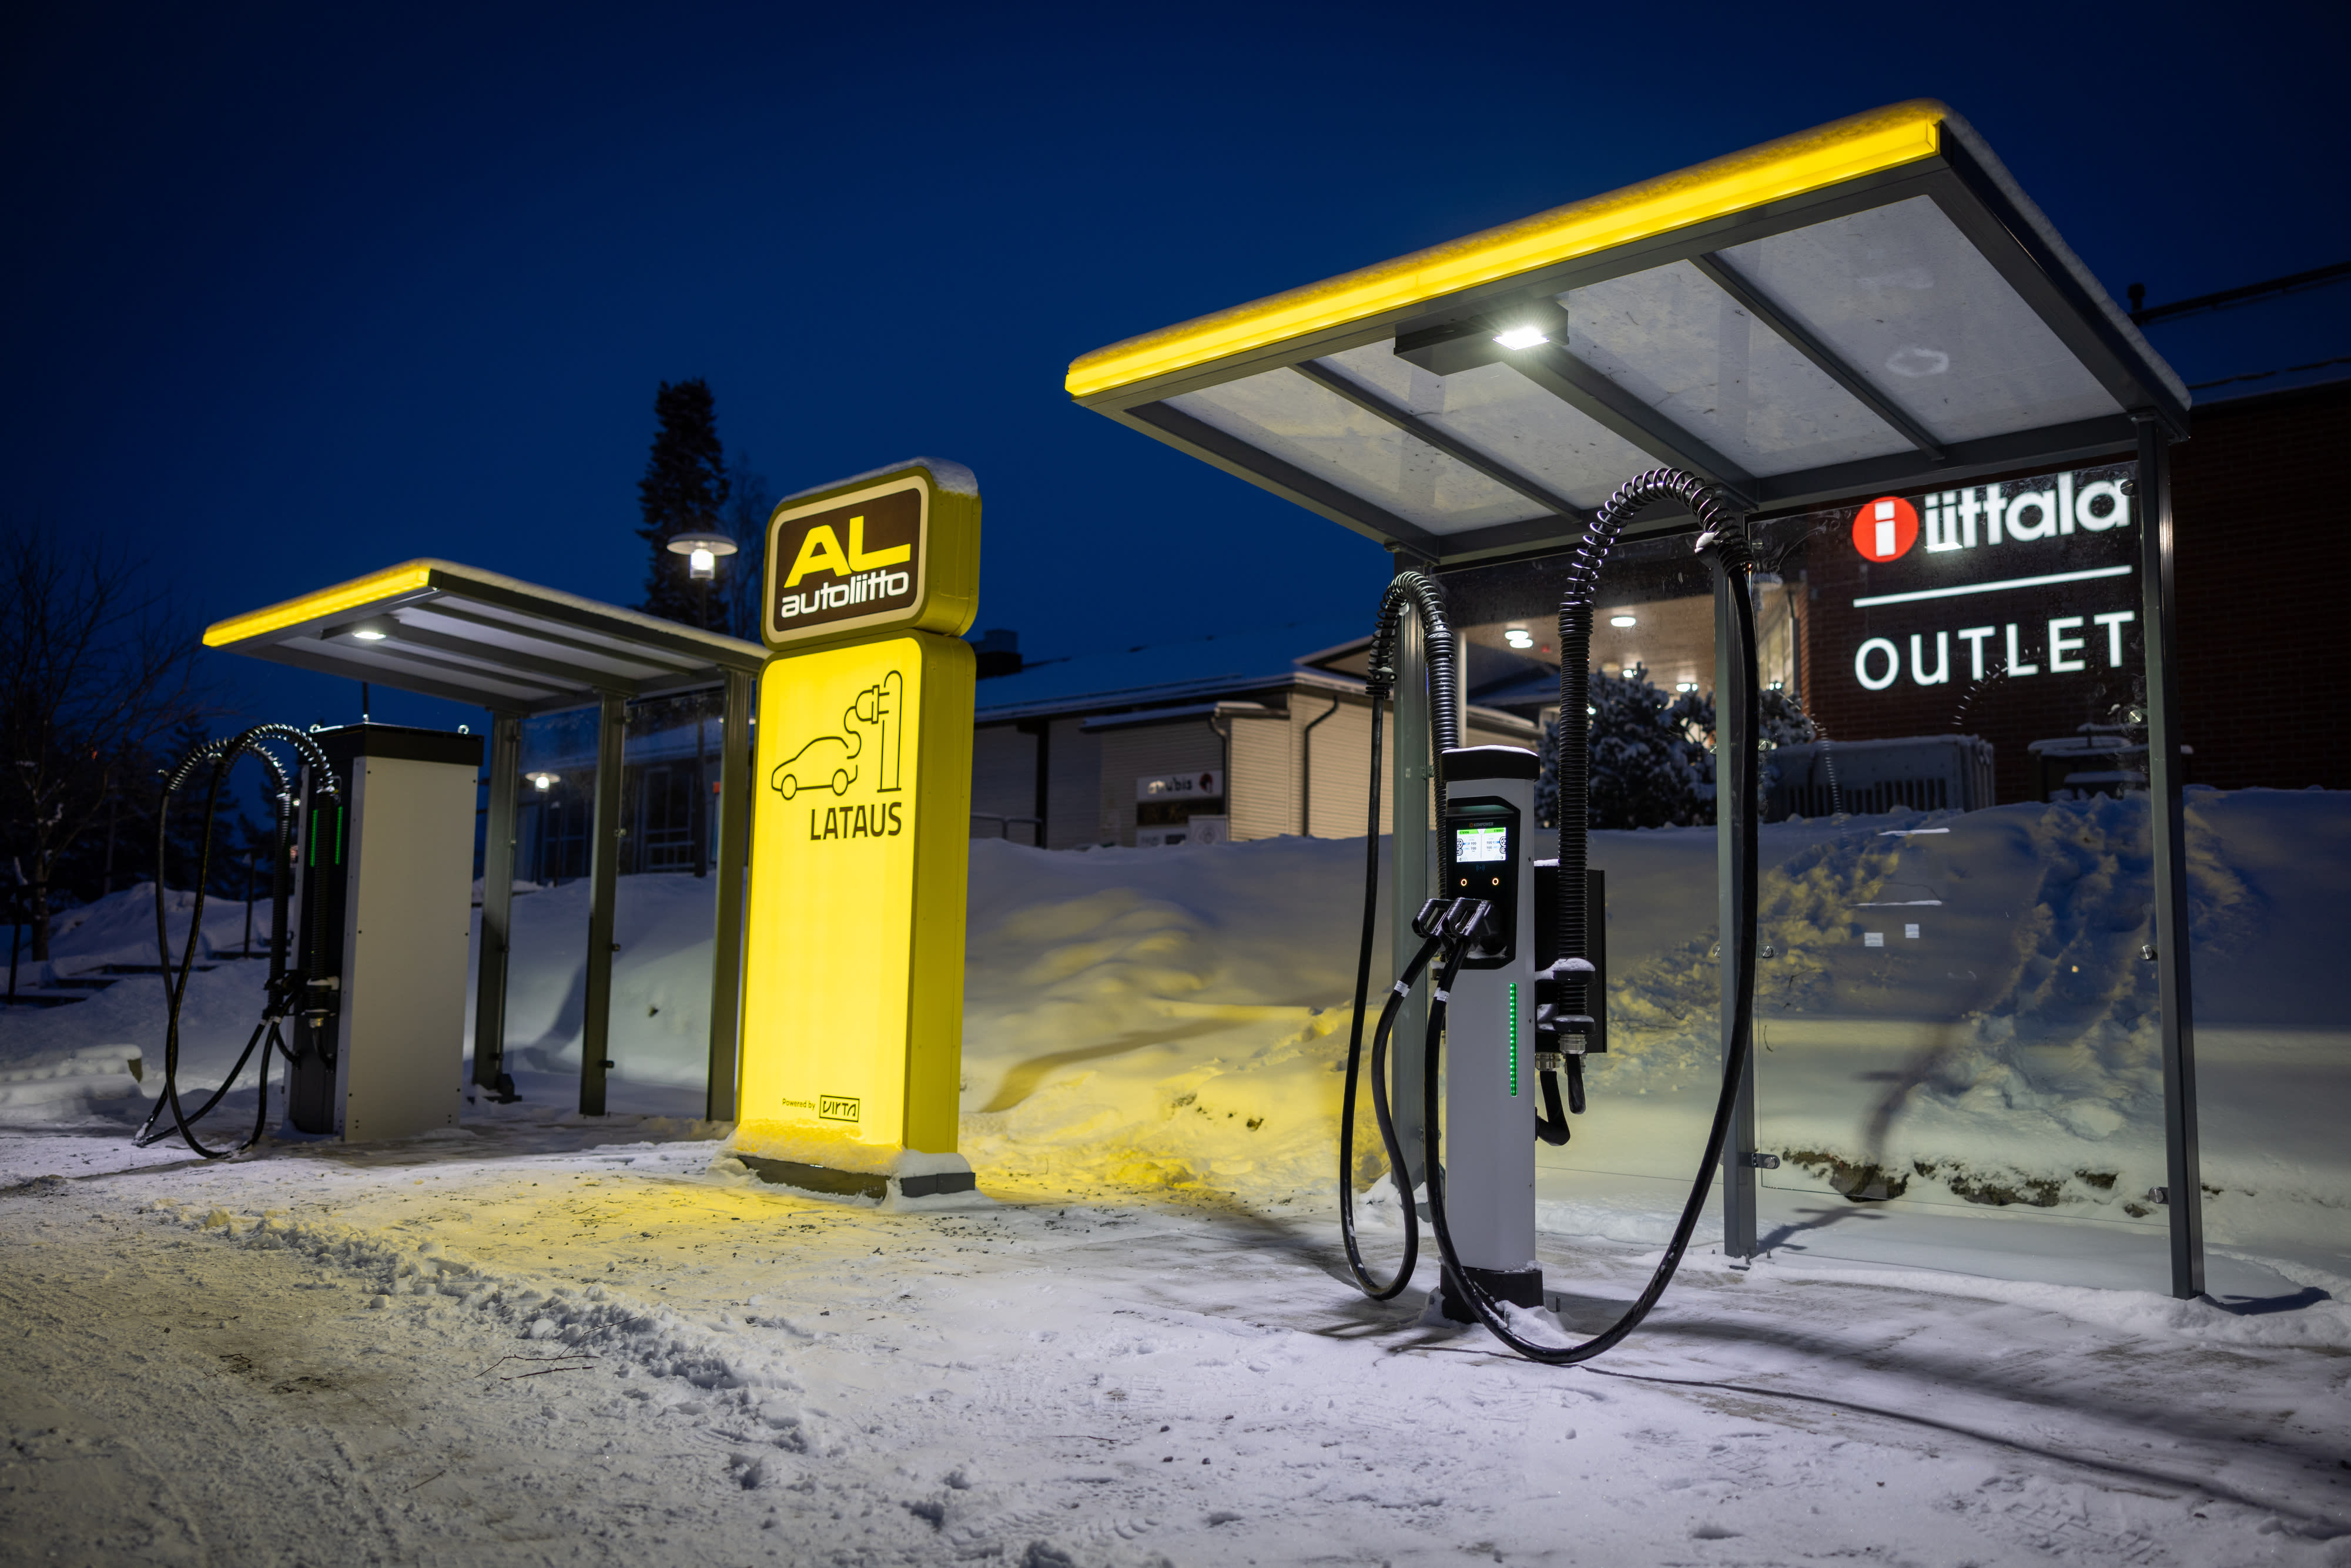 Autoilijaliitto plant ein Netz von Ladepunkten für Elektroautos in ganz Finnland